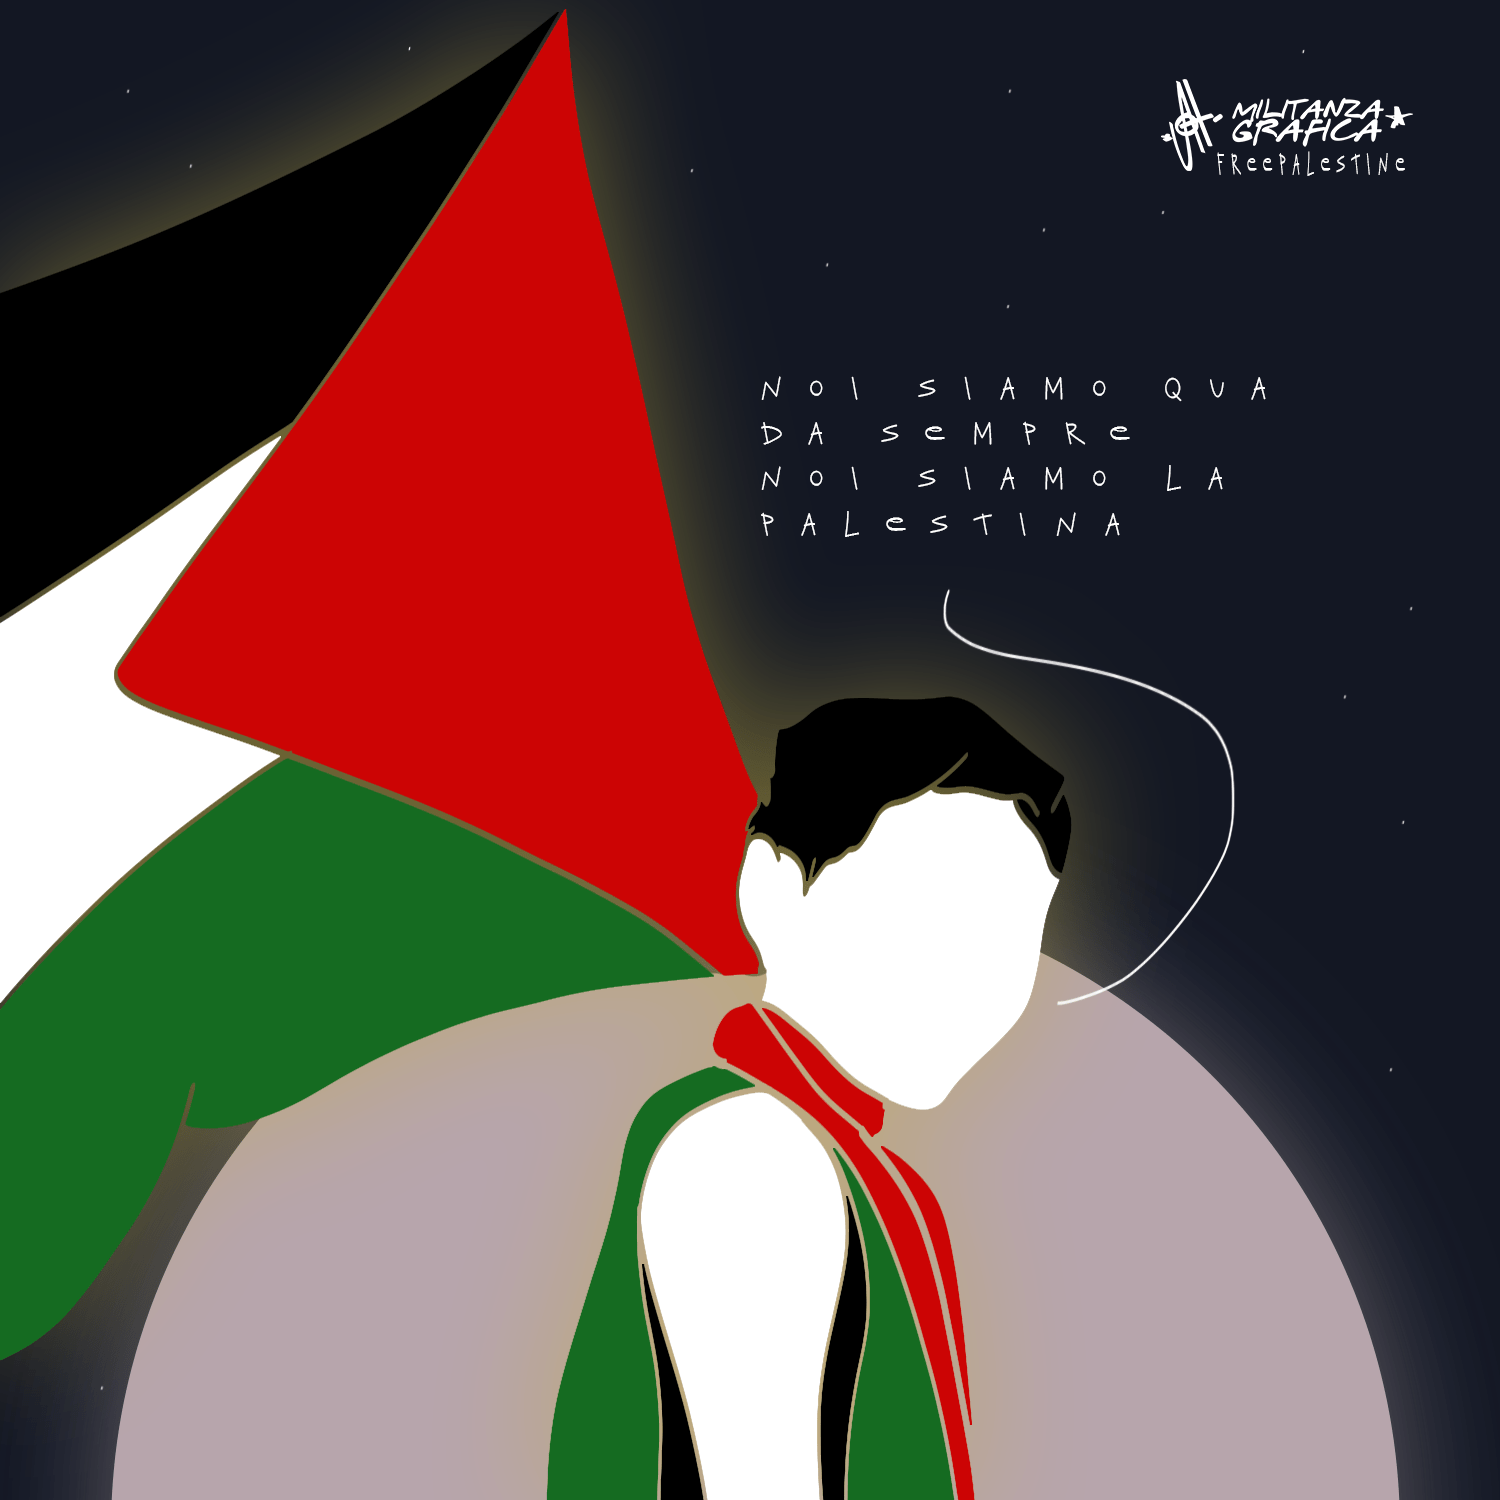 Noi siamo la palestina